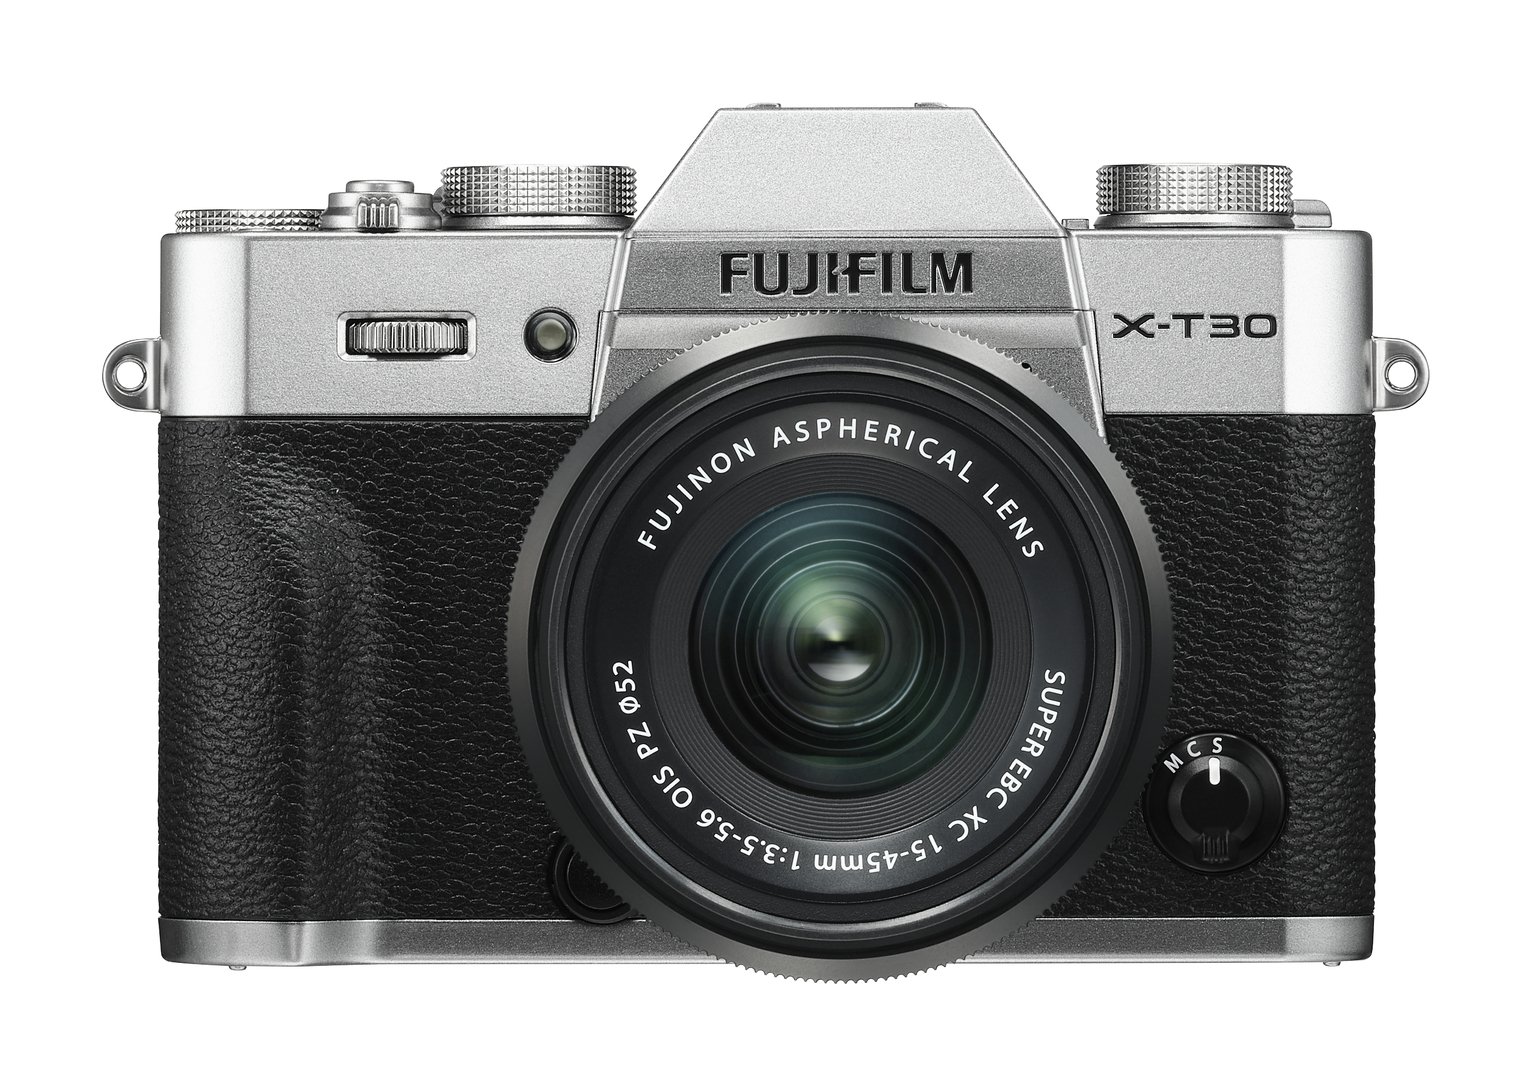 Fujifilm X-T30 Digital Camera with 15-45mm Lens - Silver